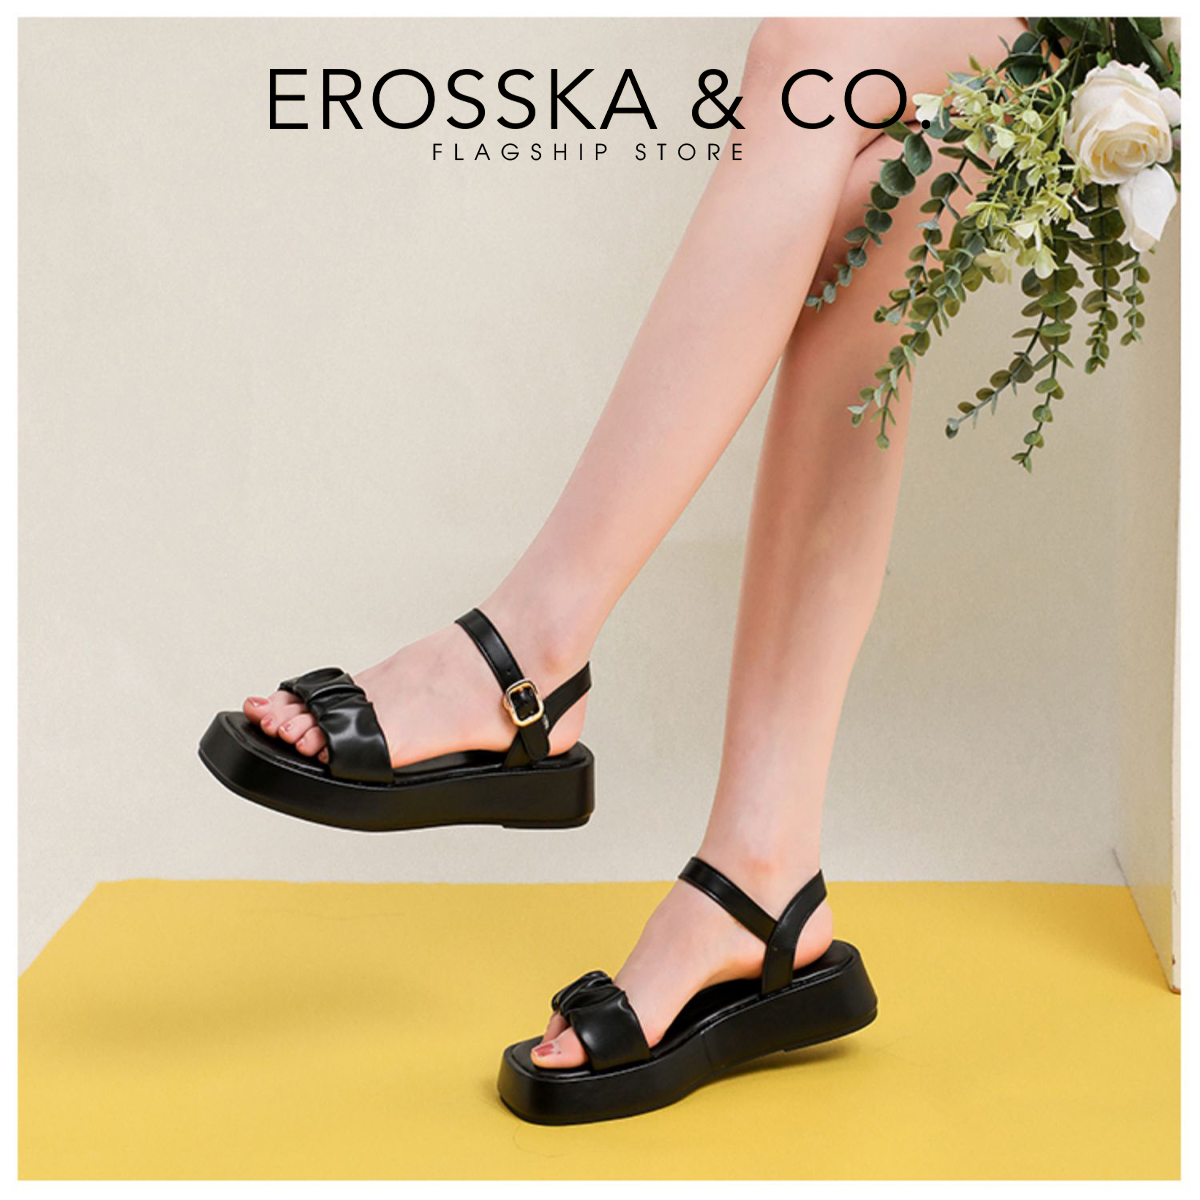 Erosska - Giày Sandal nữ đế xuồng quai nhún da mềm thoải mái cao 3cm màu kem - SB018